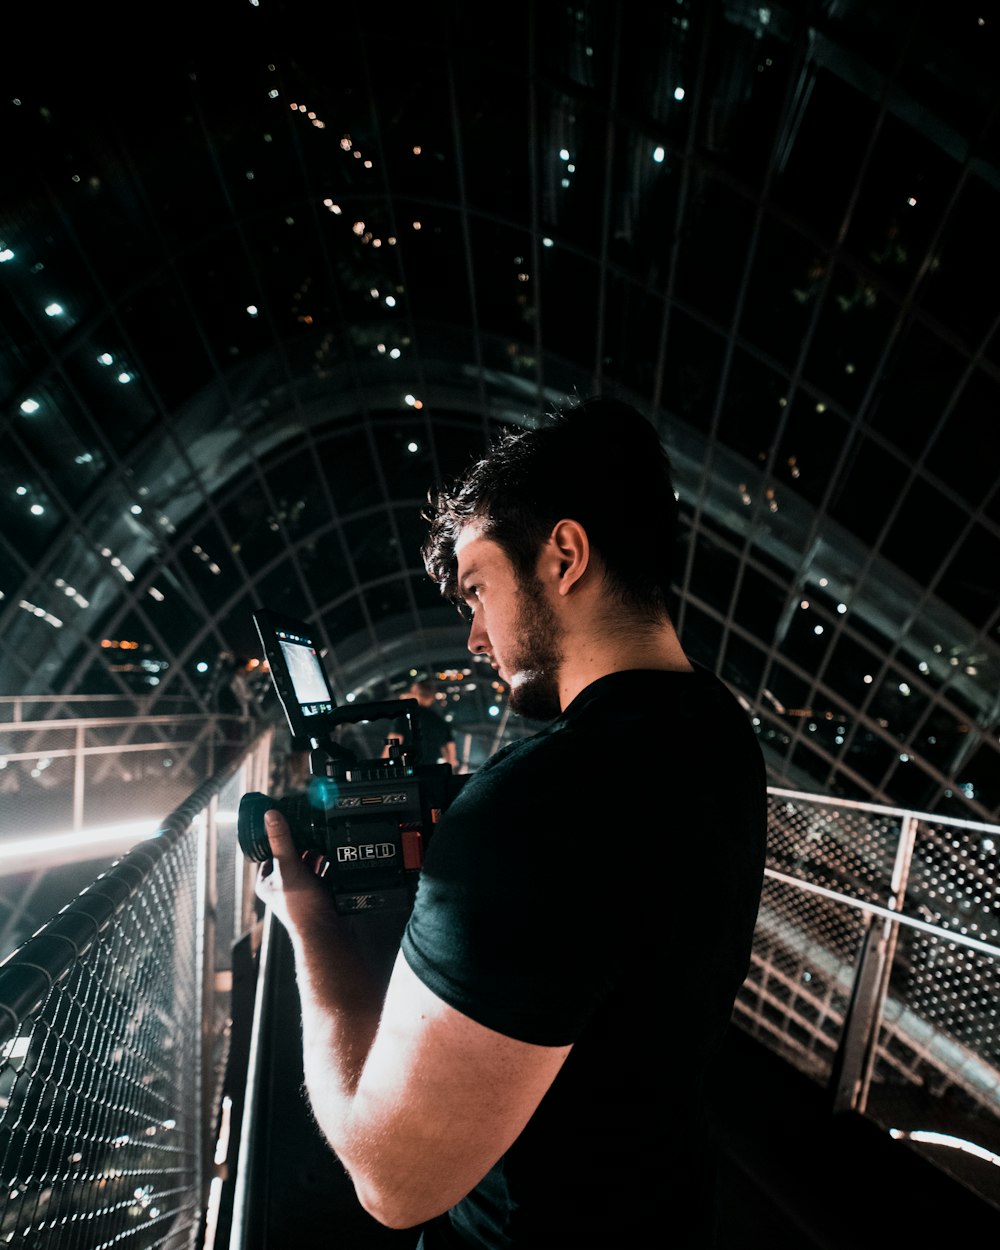 man wearing black shirt holding video camera